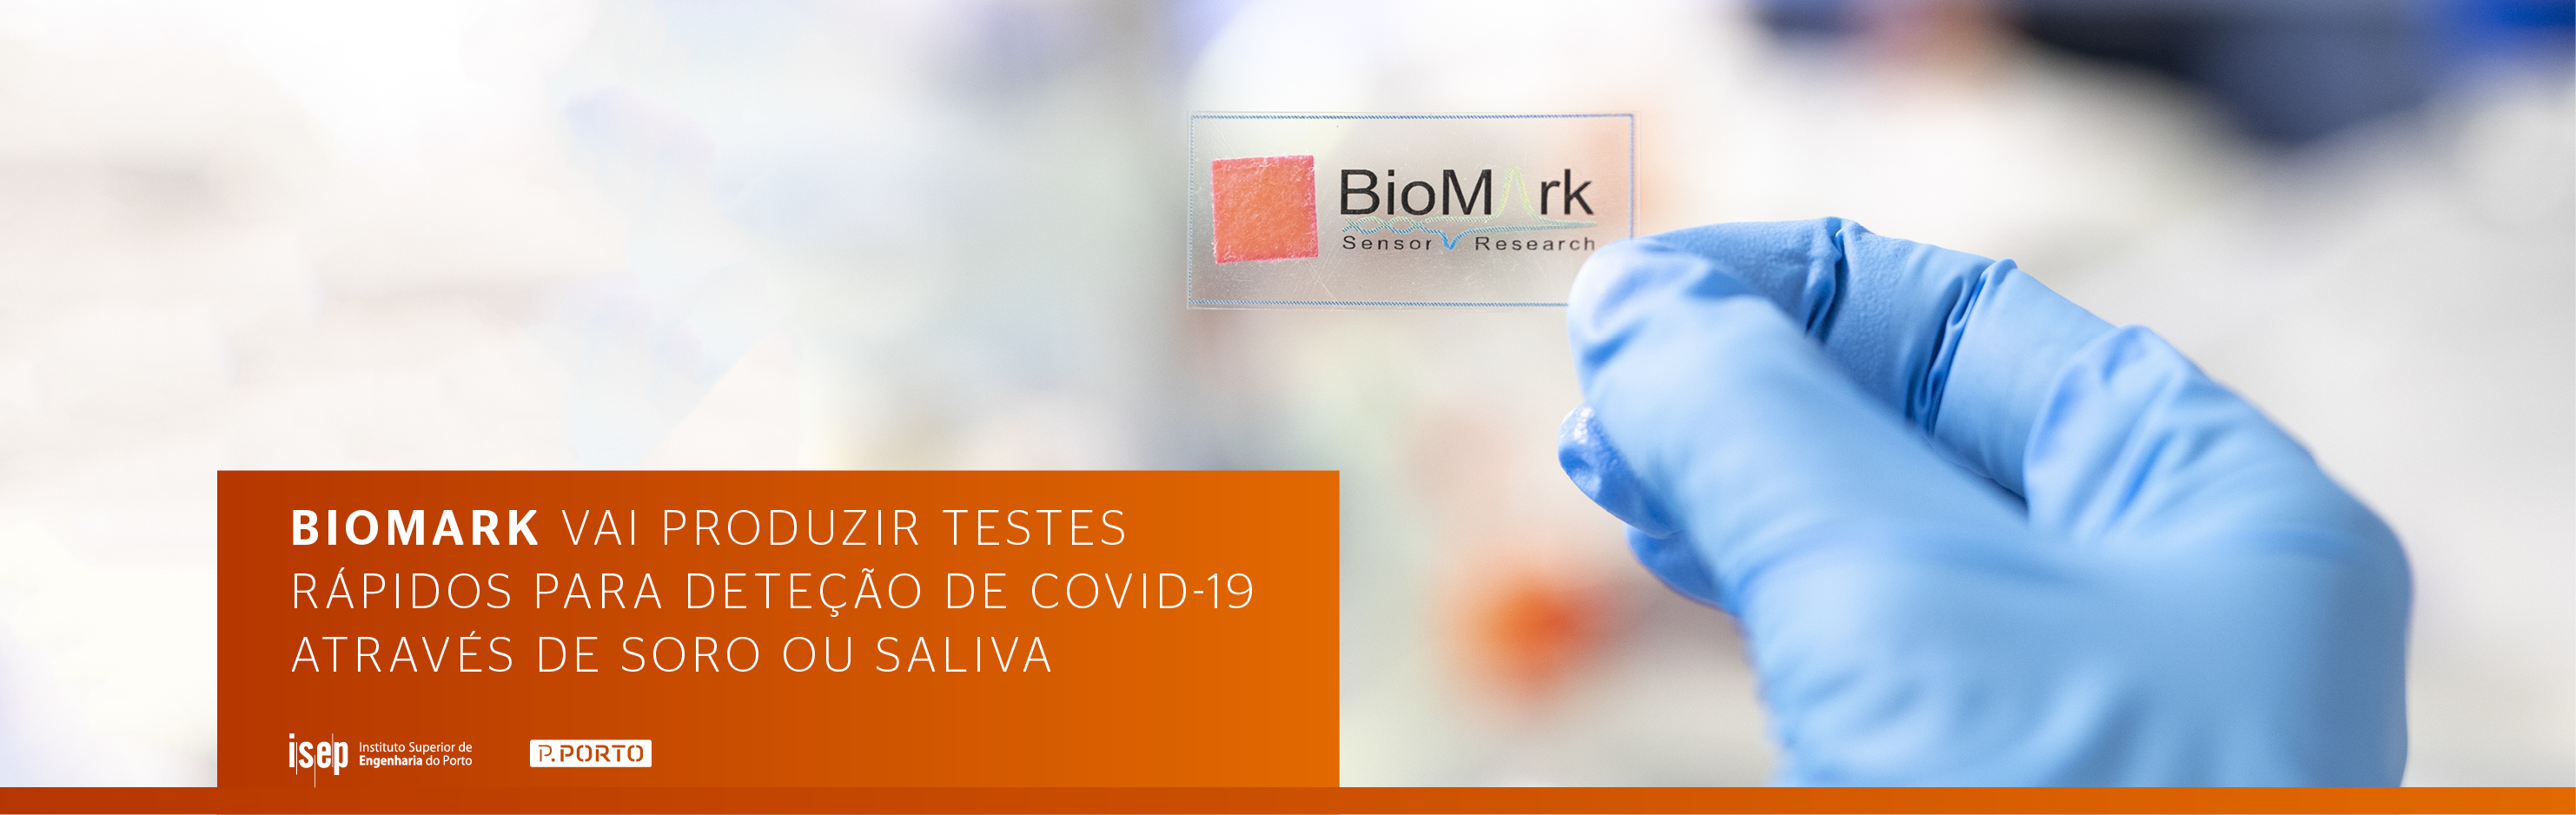 BioMark vai produzir testes rápidos para deteção de Covid-19 através de soro ou saliva